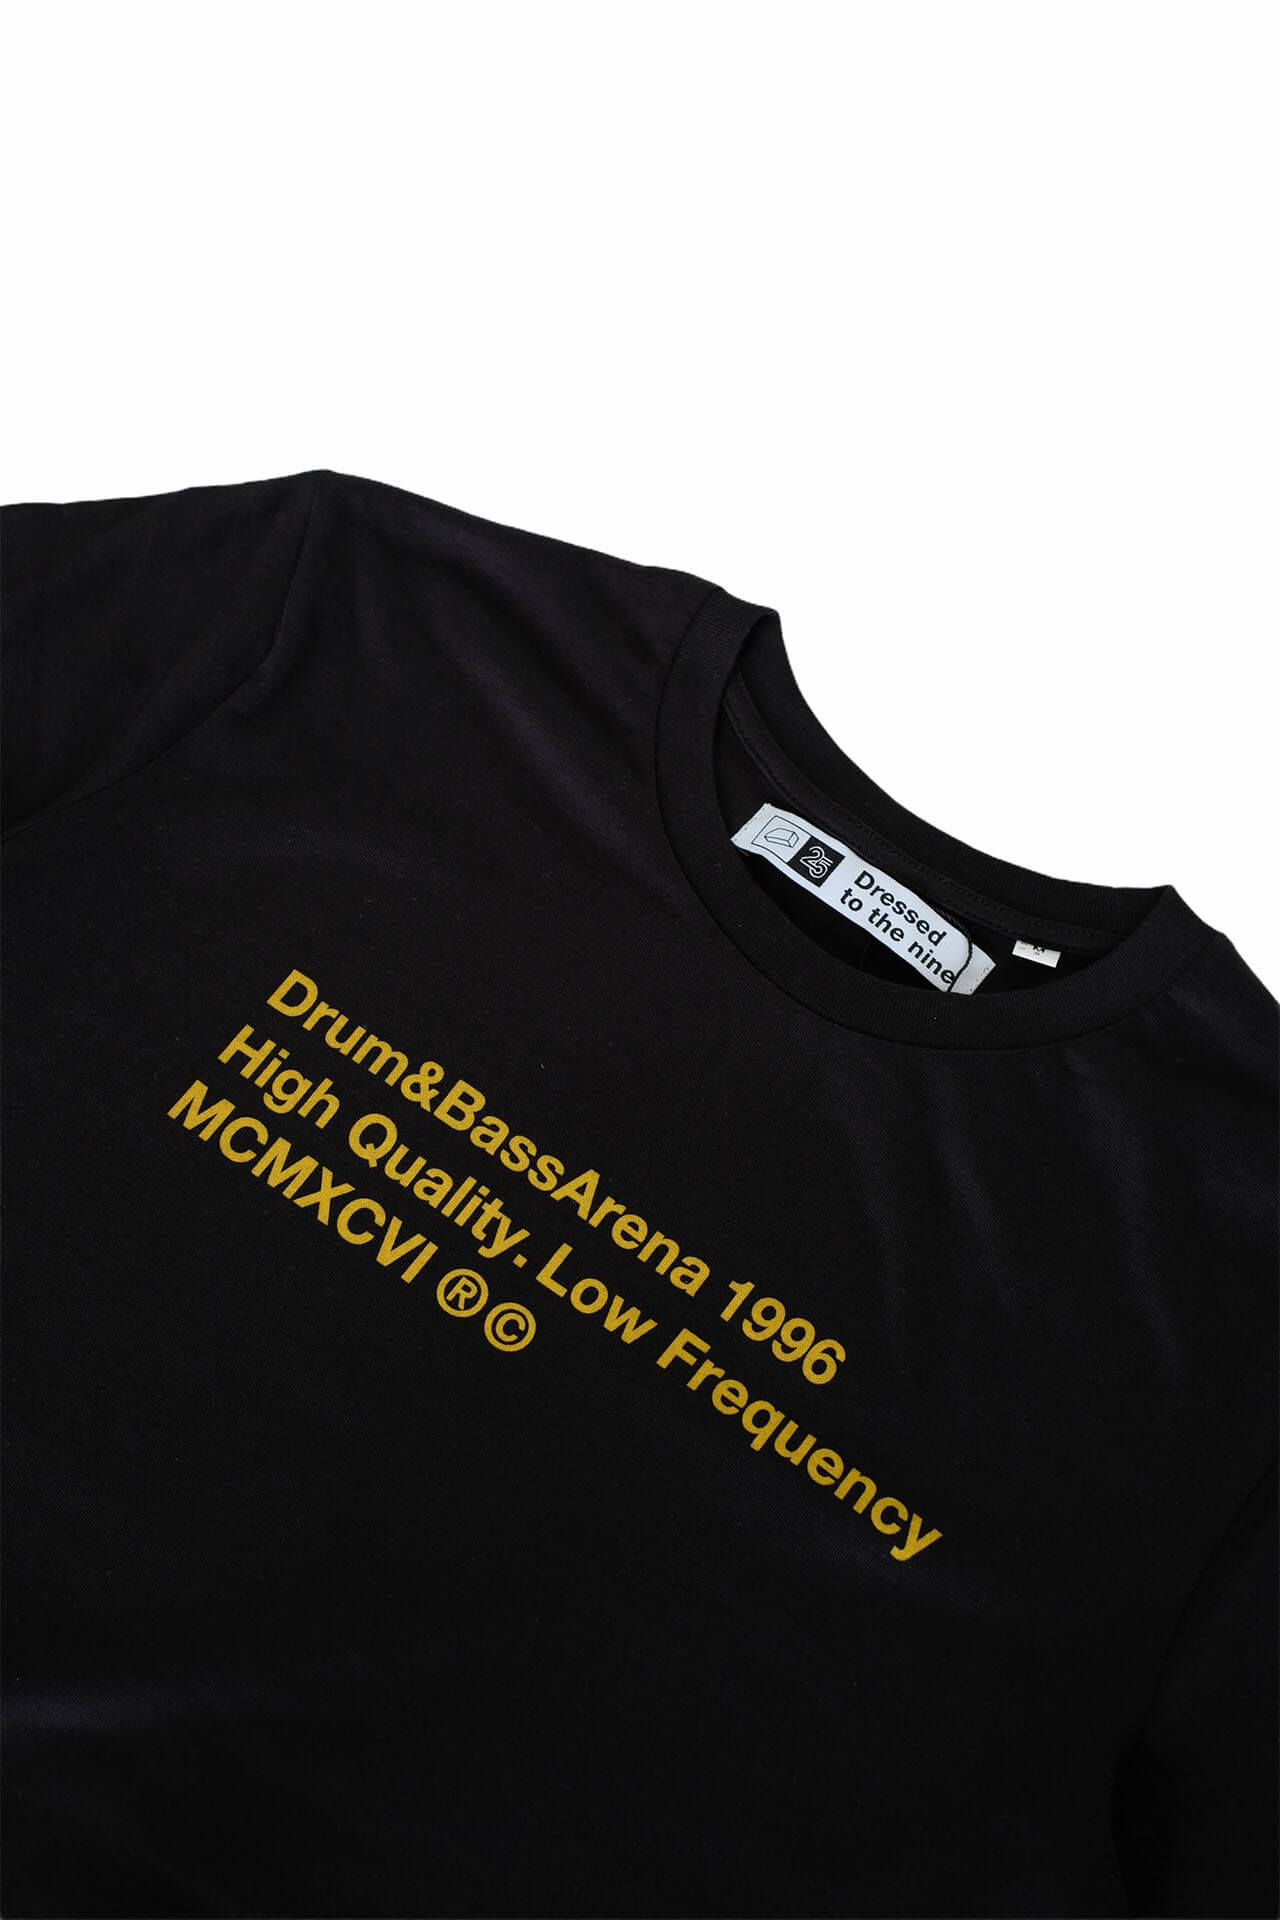 25 Years of Drum&BassArena T-shirt (Unisex)